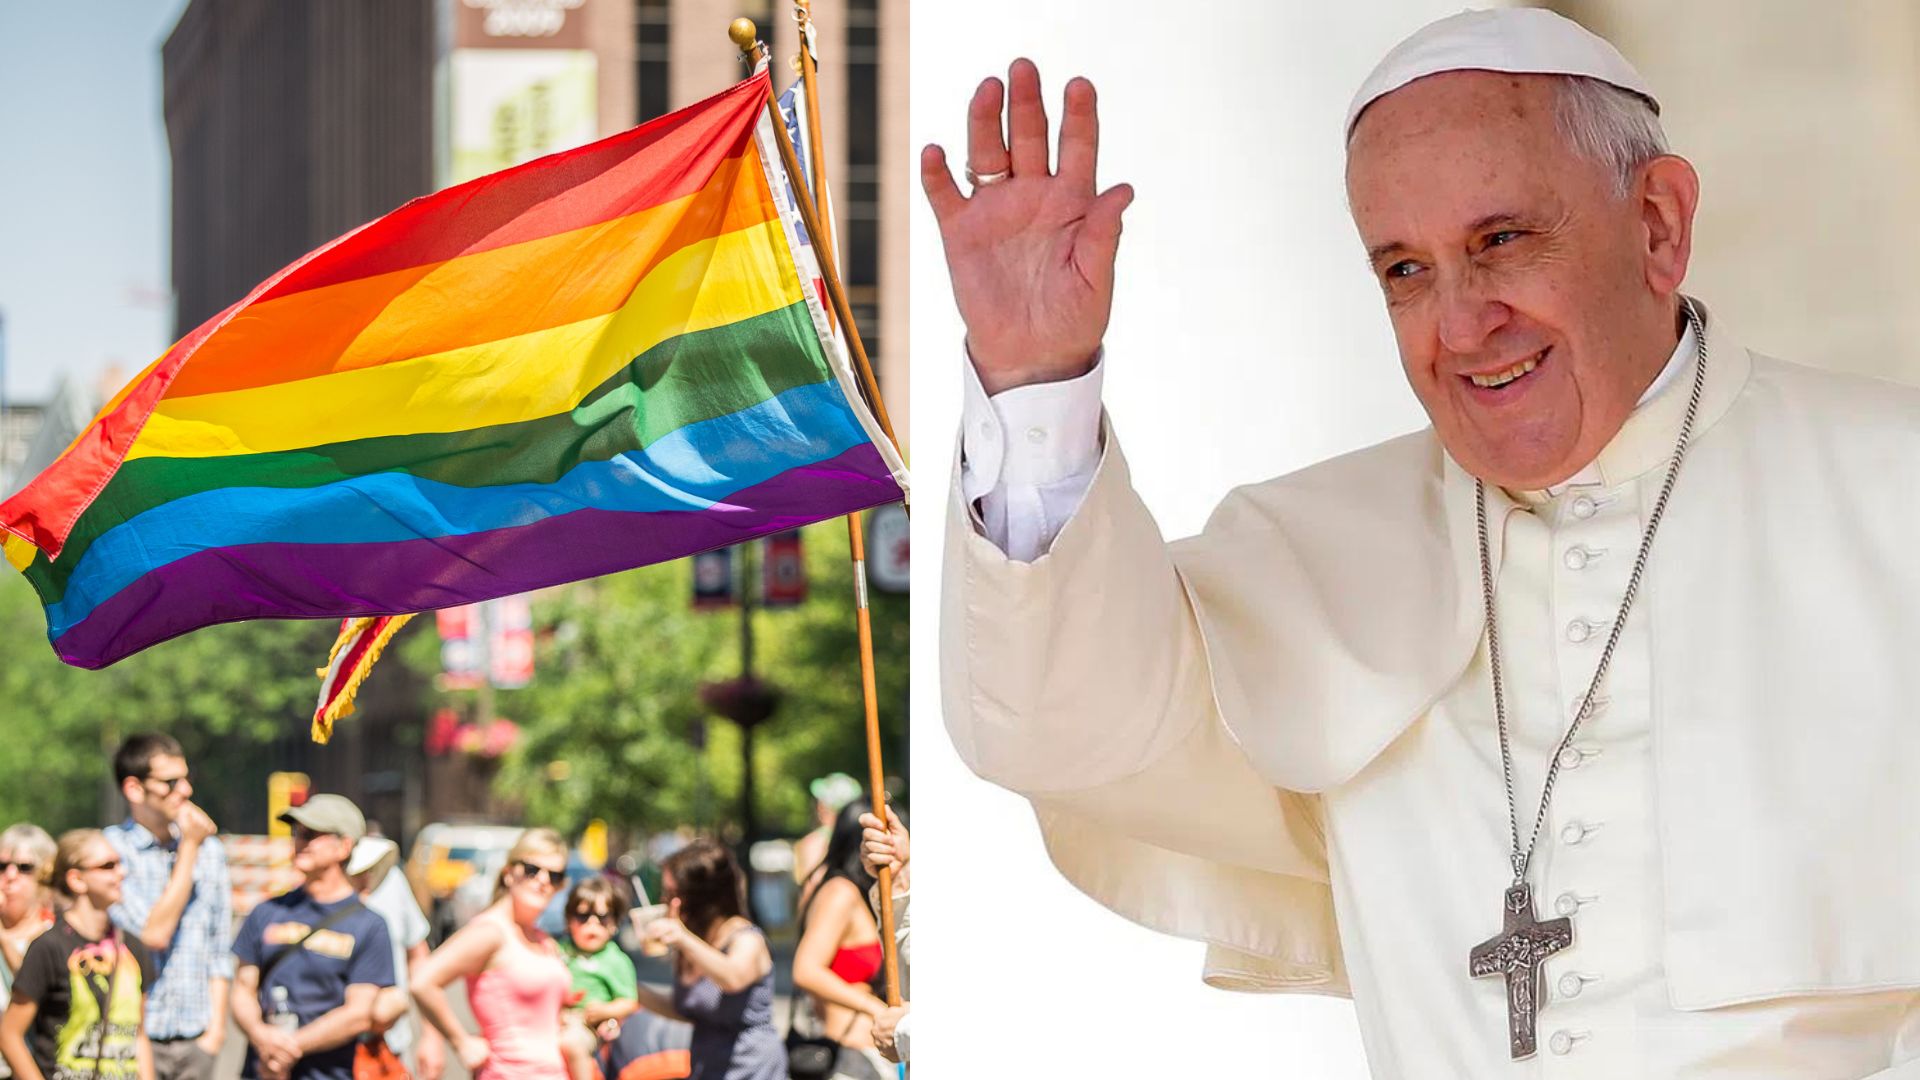 ‘Ar de bichice’: Papa Francisco repete fala homofóbica em reunião fechada